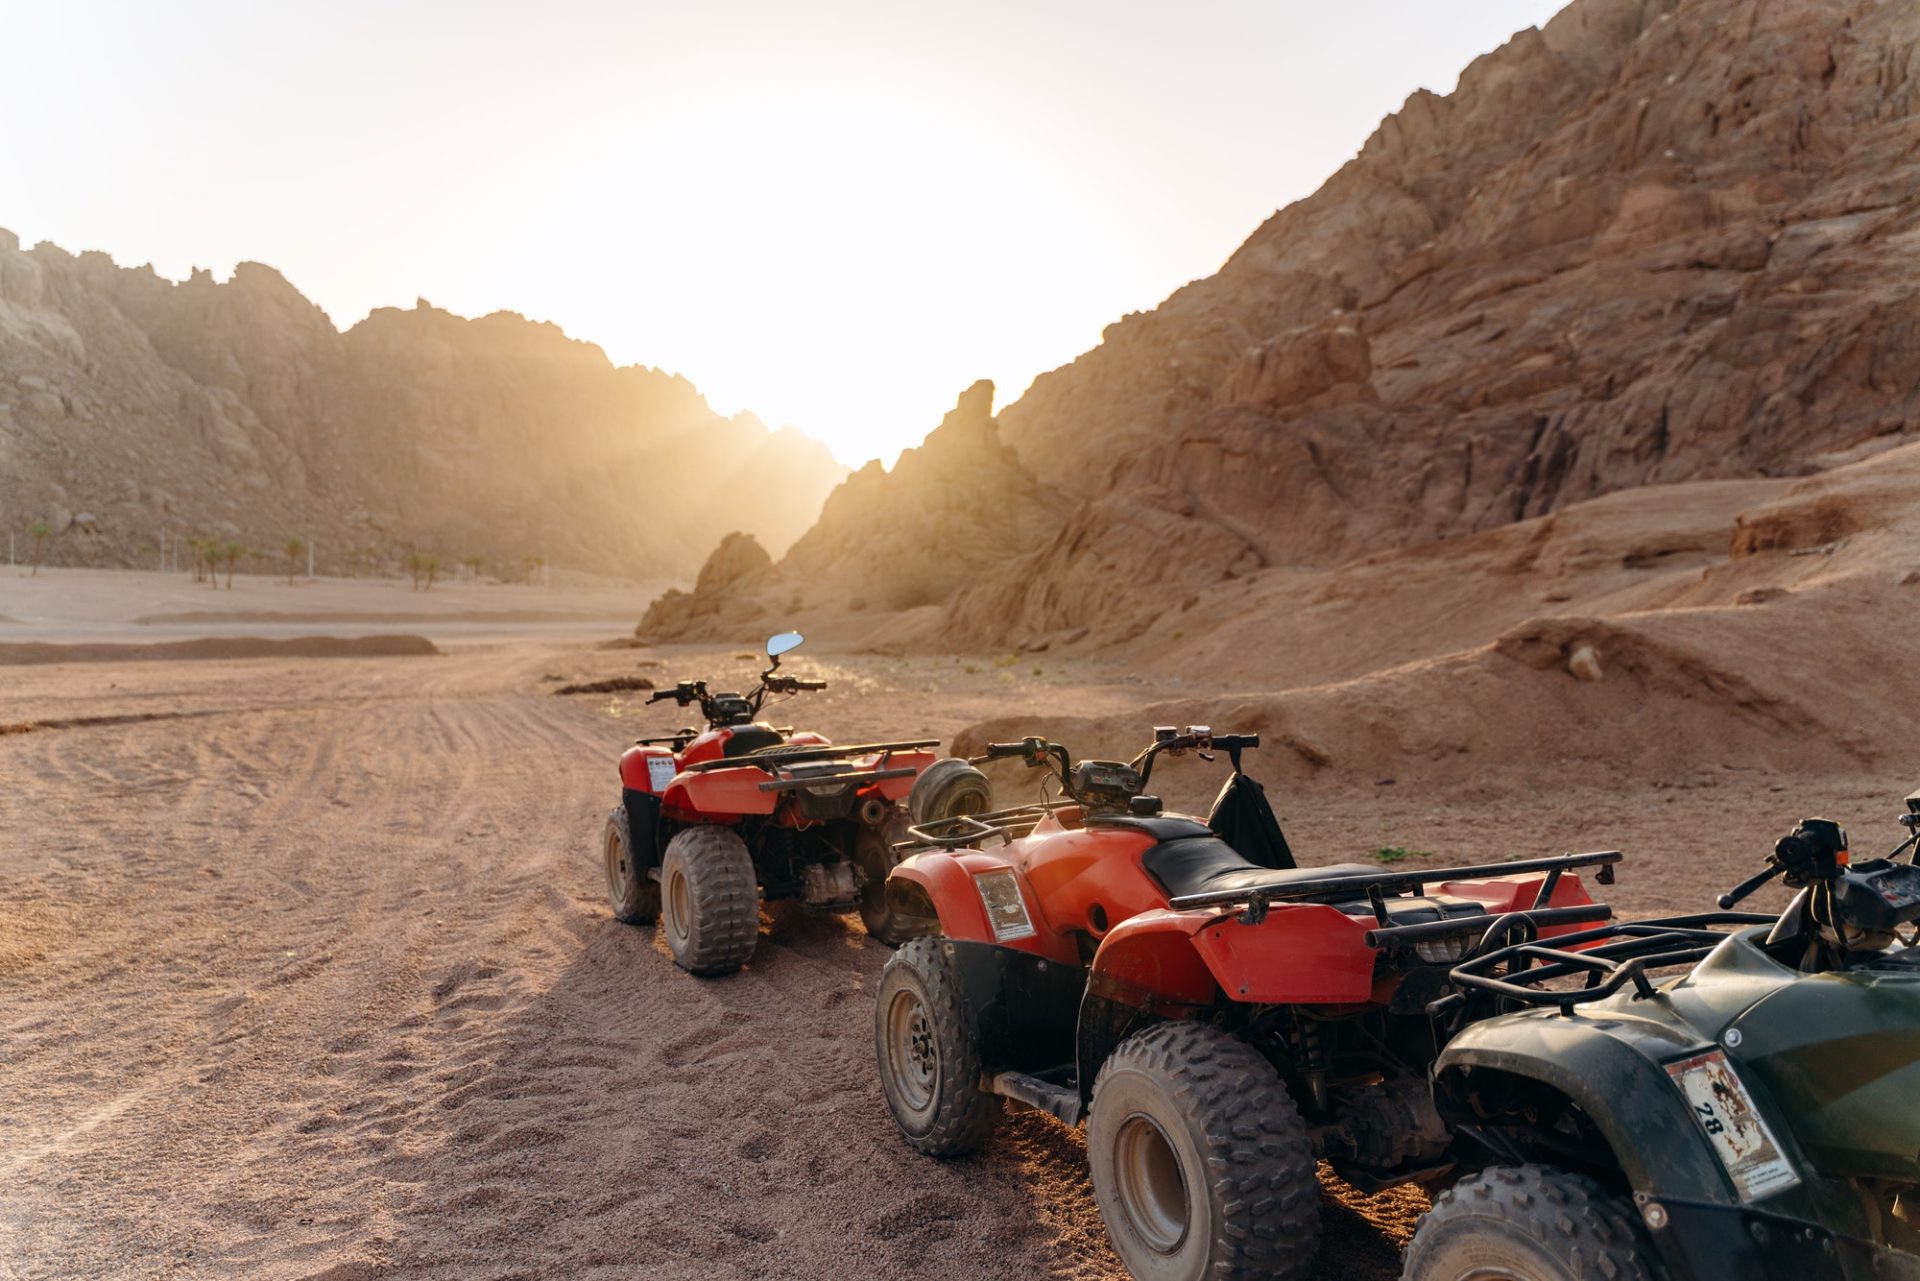 Column of ATVs in the desert at sunset. Sunny desert